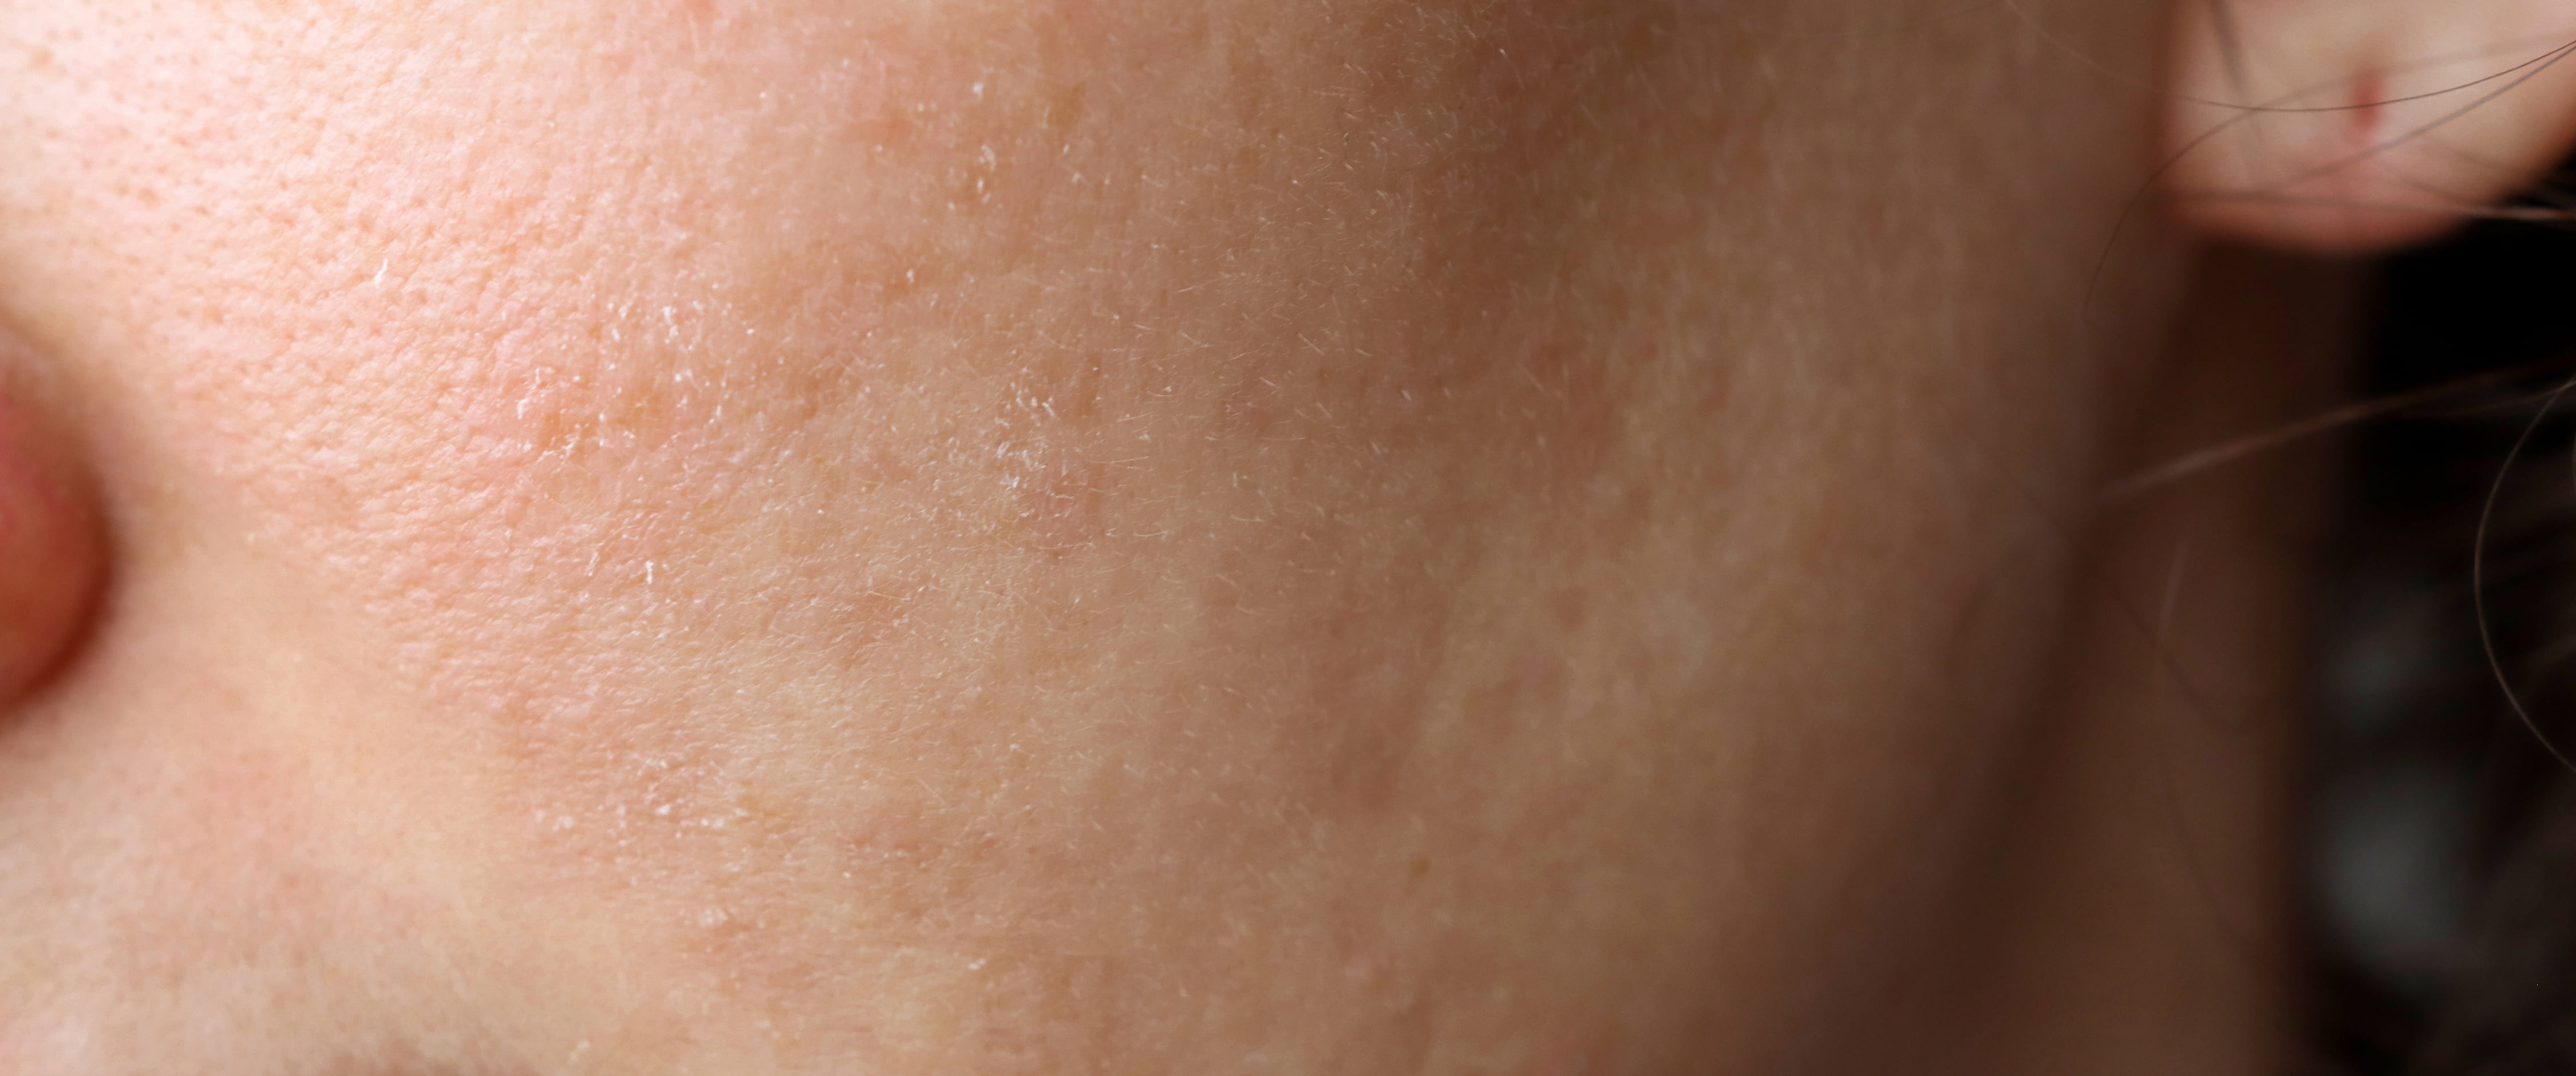 Догляд за сухою шкірою обличчя: причини та ознаки сухості шкіри,  рекомендації щодо догляду